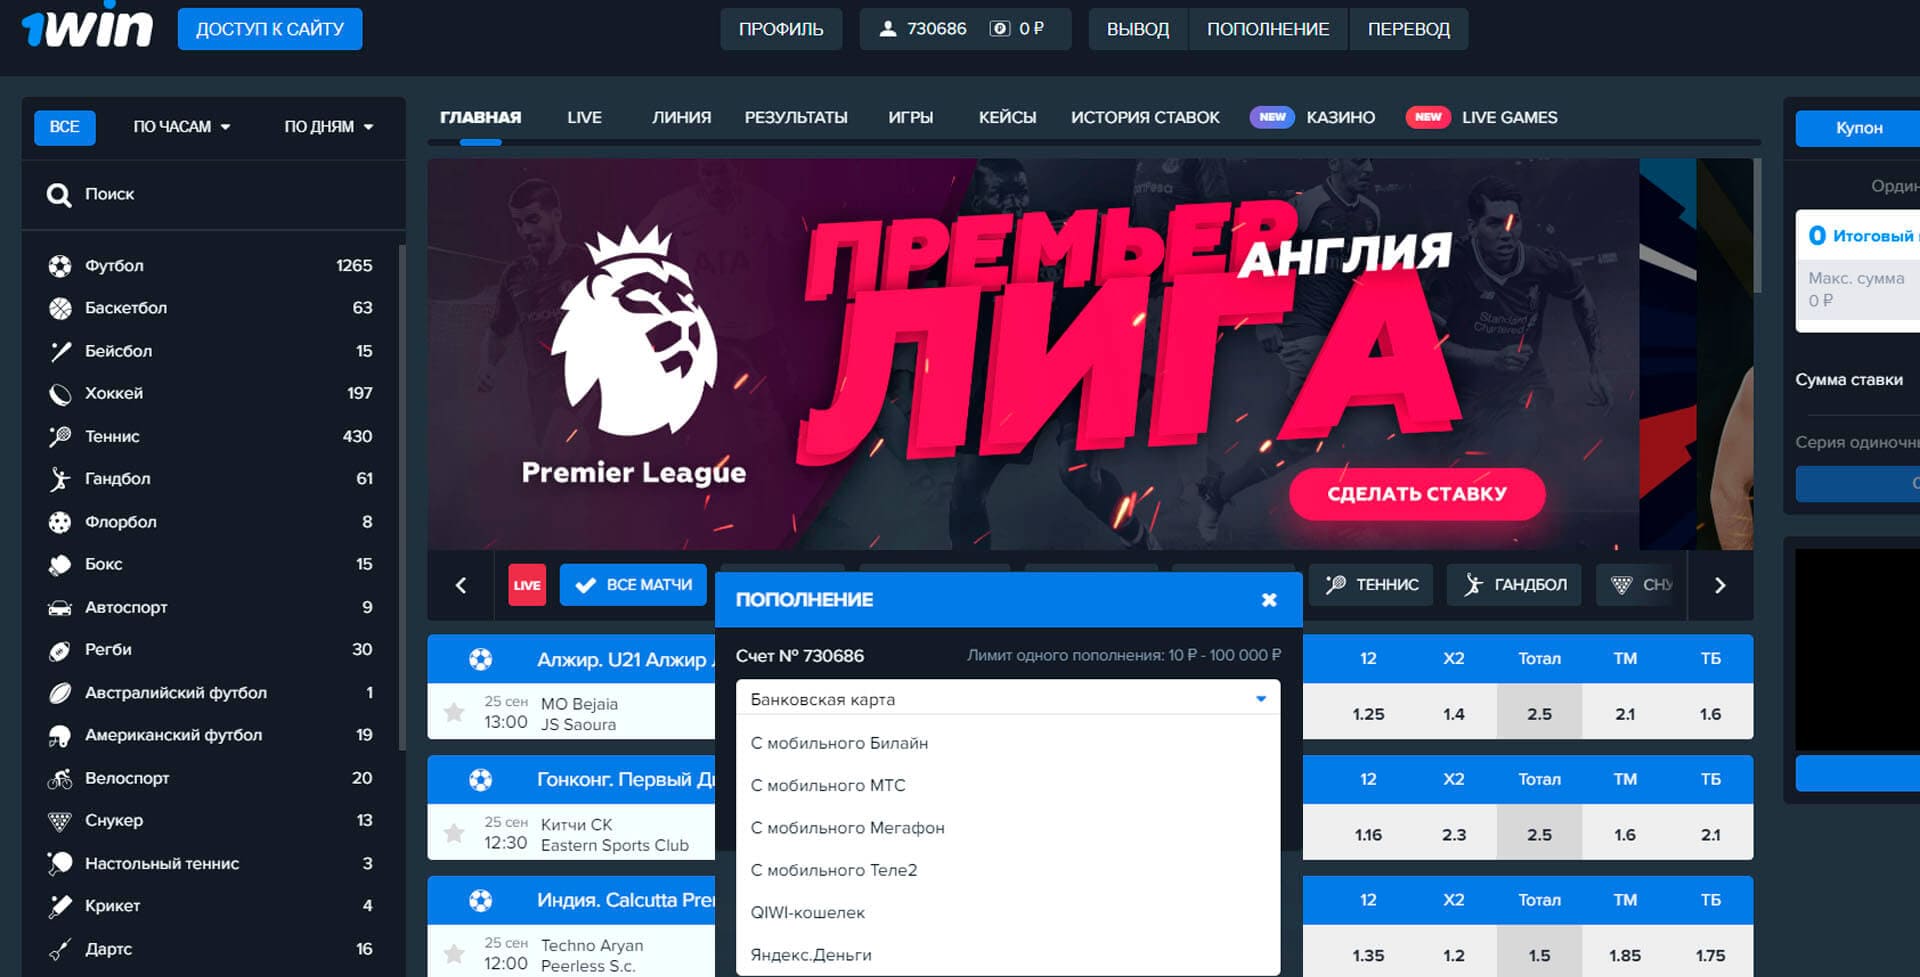 1win ставки на спорт onewinbk ru casino online на реальные деньги